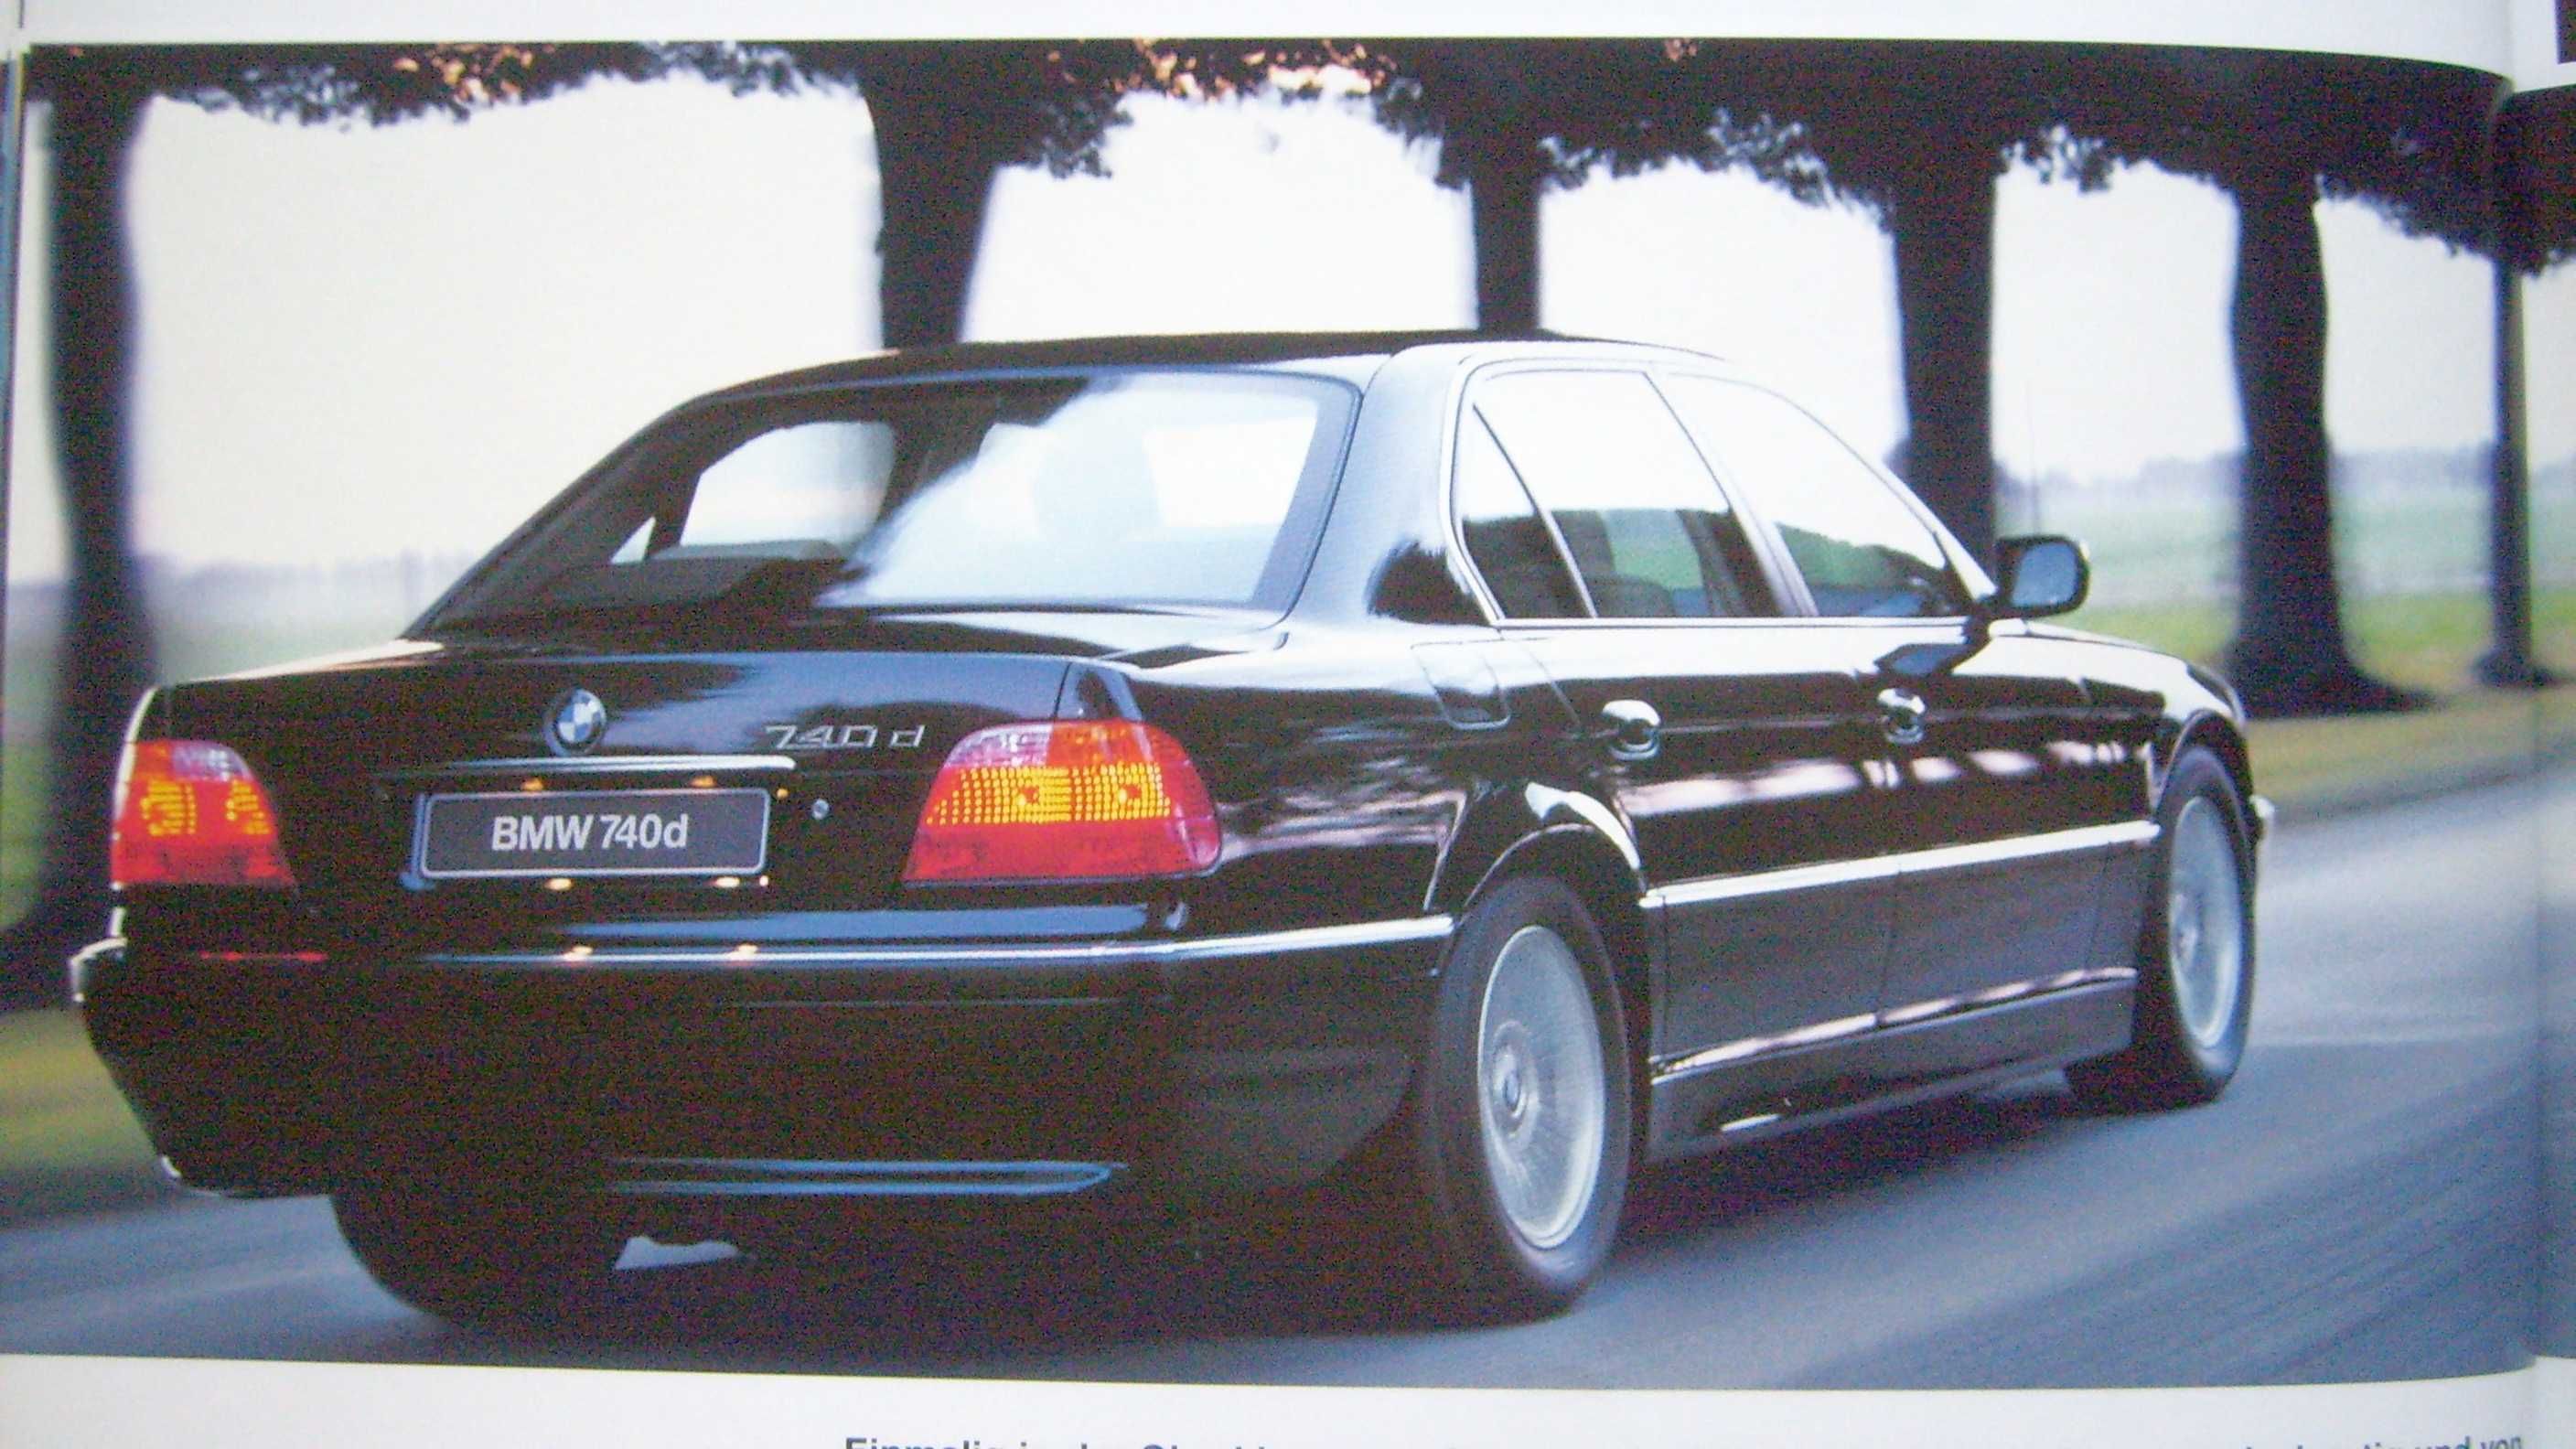 BMW Programm 1999 - 3 E46, Z3, 5 E39, 7 E38, 8 E31 * prospekt 50 str.